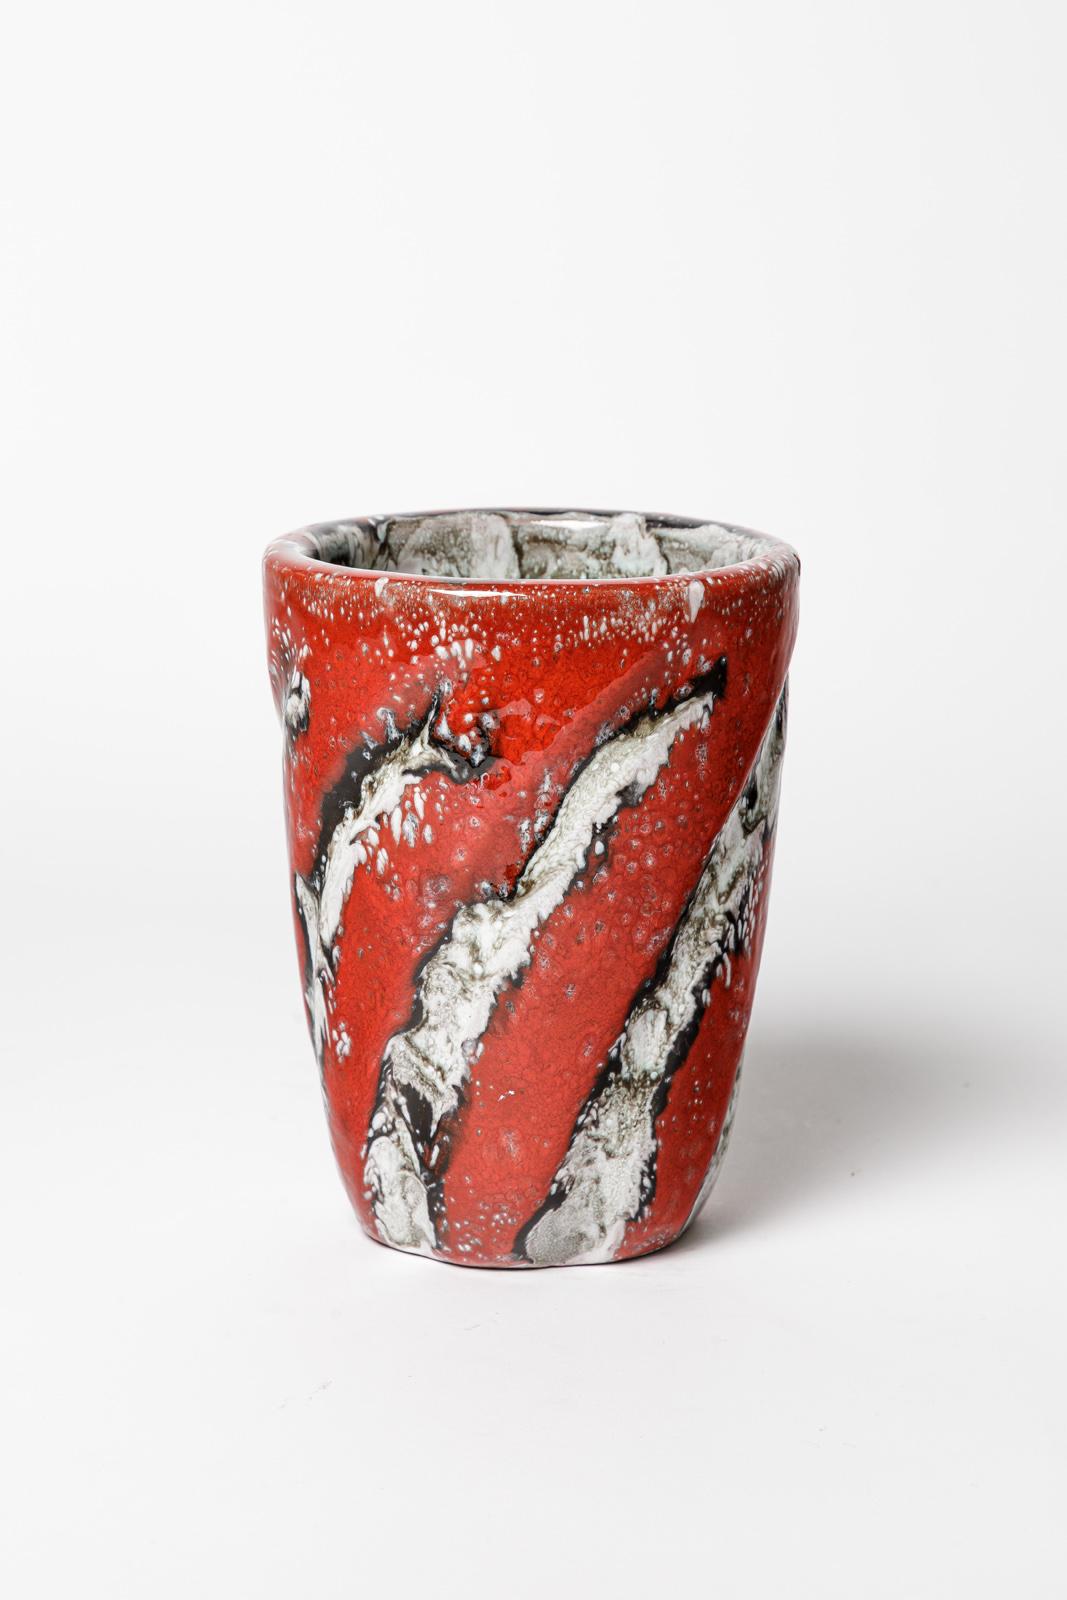 Arlette Roux

Vase en céramique blanc et rouge, design du 20e siècle

Condition originale parfaite.

Signé

Hauteur 16 cm
Grand 12 cm